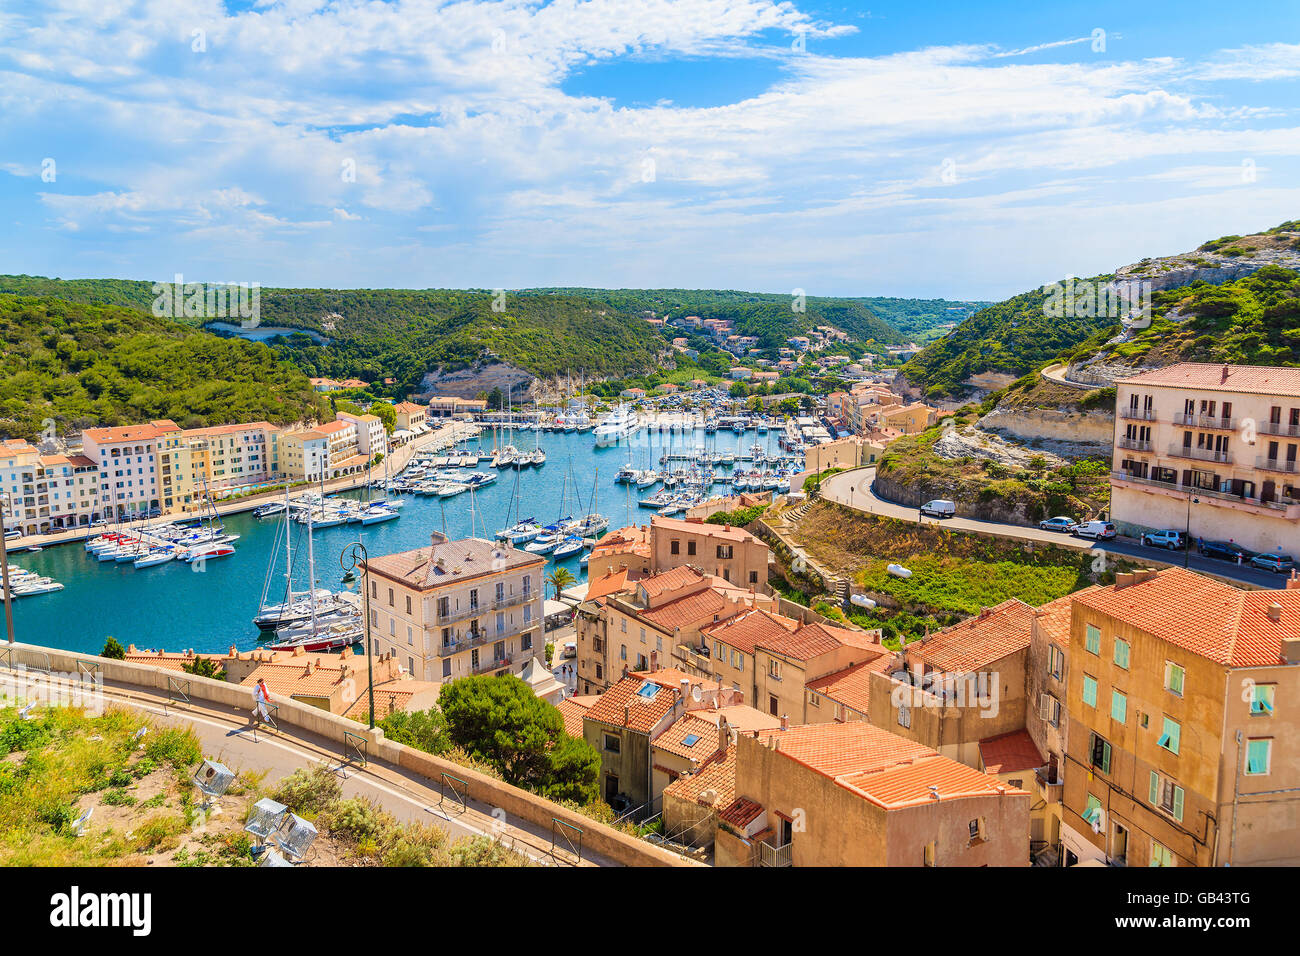 Une vue sur le port et la vieille ville de Bonifacio, Corse, France Banque D'Images